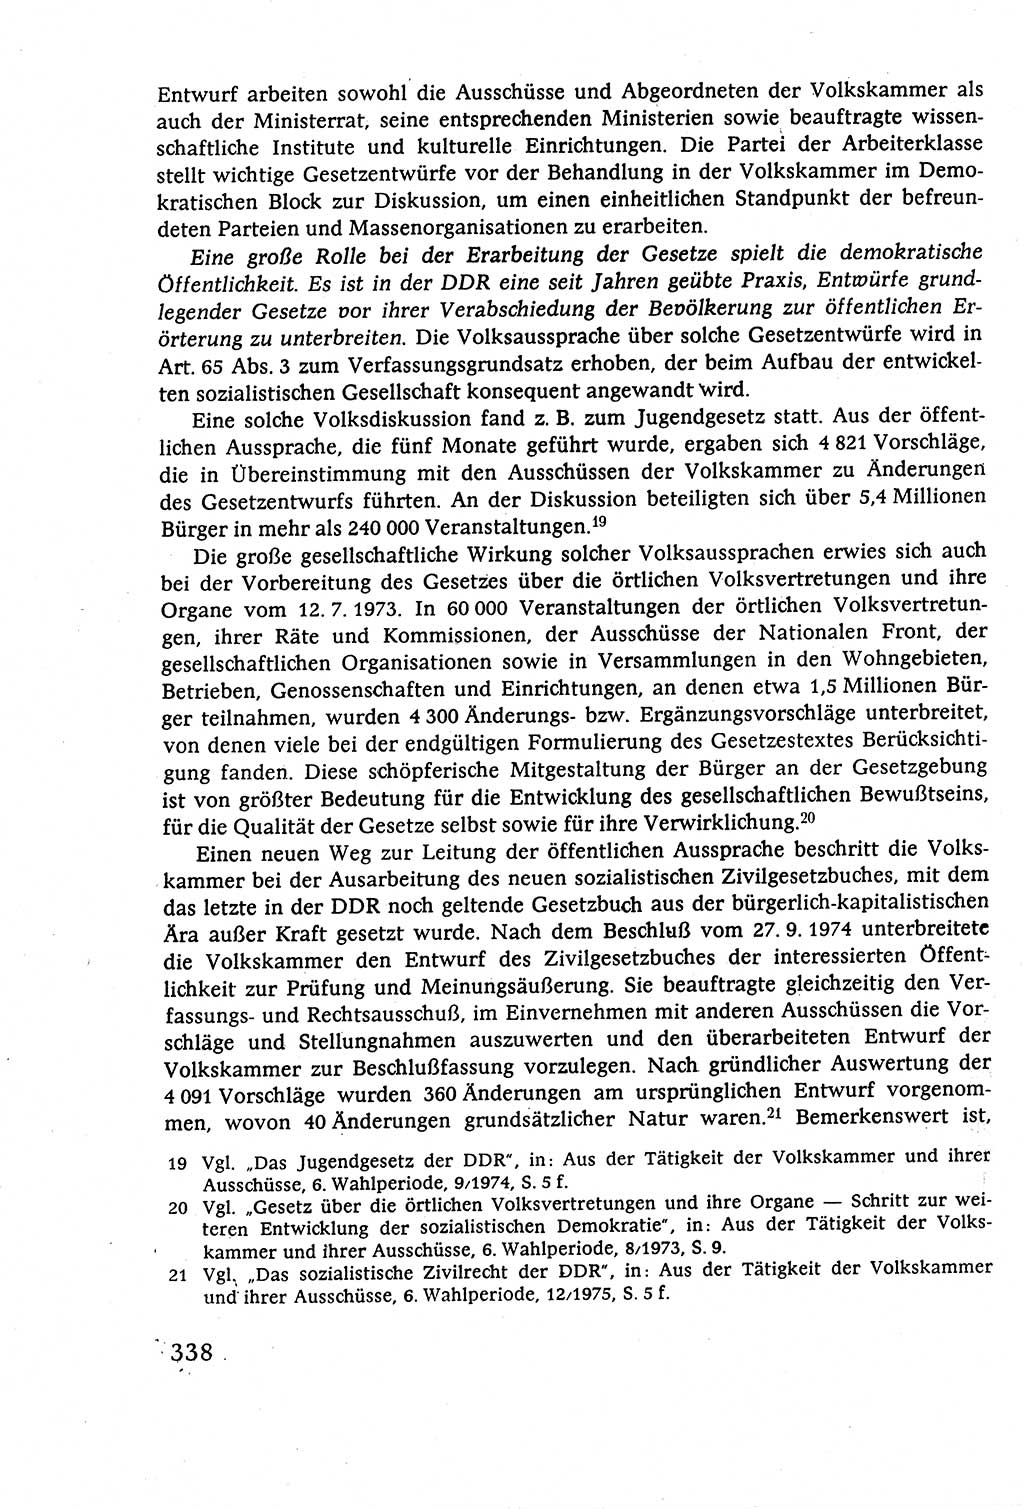 Staatsrecht der DDR (Deutsche Demokratische Republik), Lehrbuch 1977, Seite 338 (St.-R. DDR Lb. 1977, S. 338)